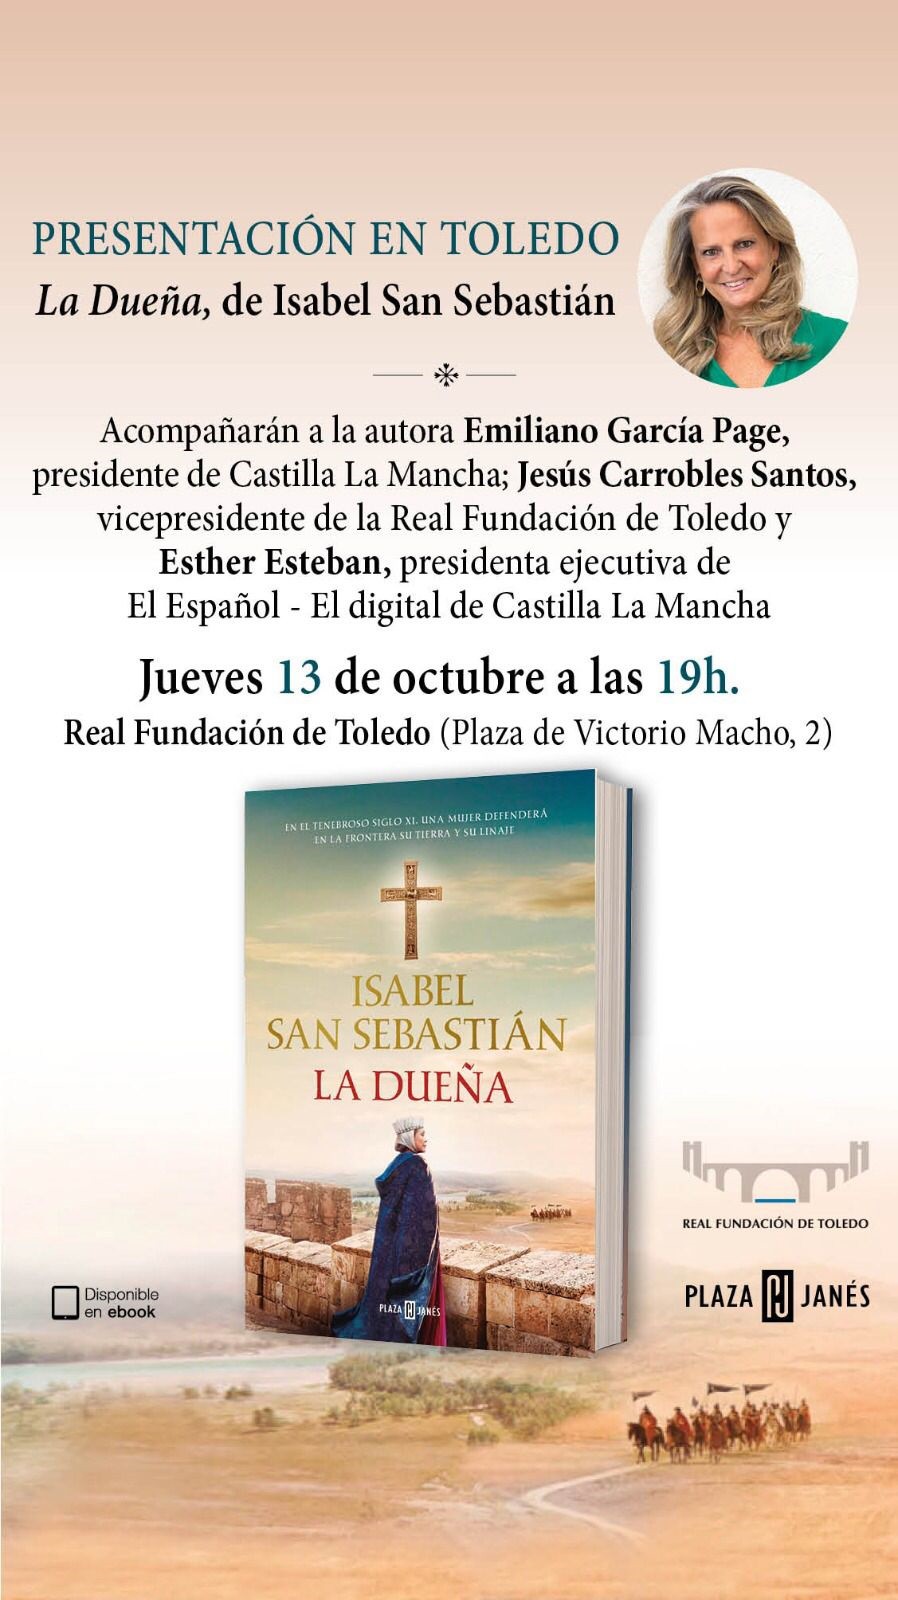 Cartel anunciador del acto de presentación del nuevo libro de Isabel San Sebastián